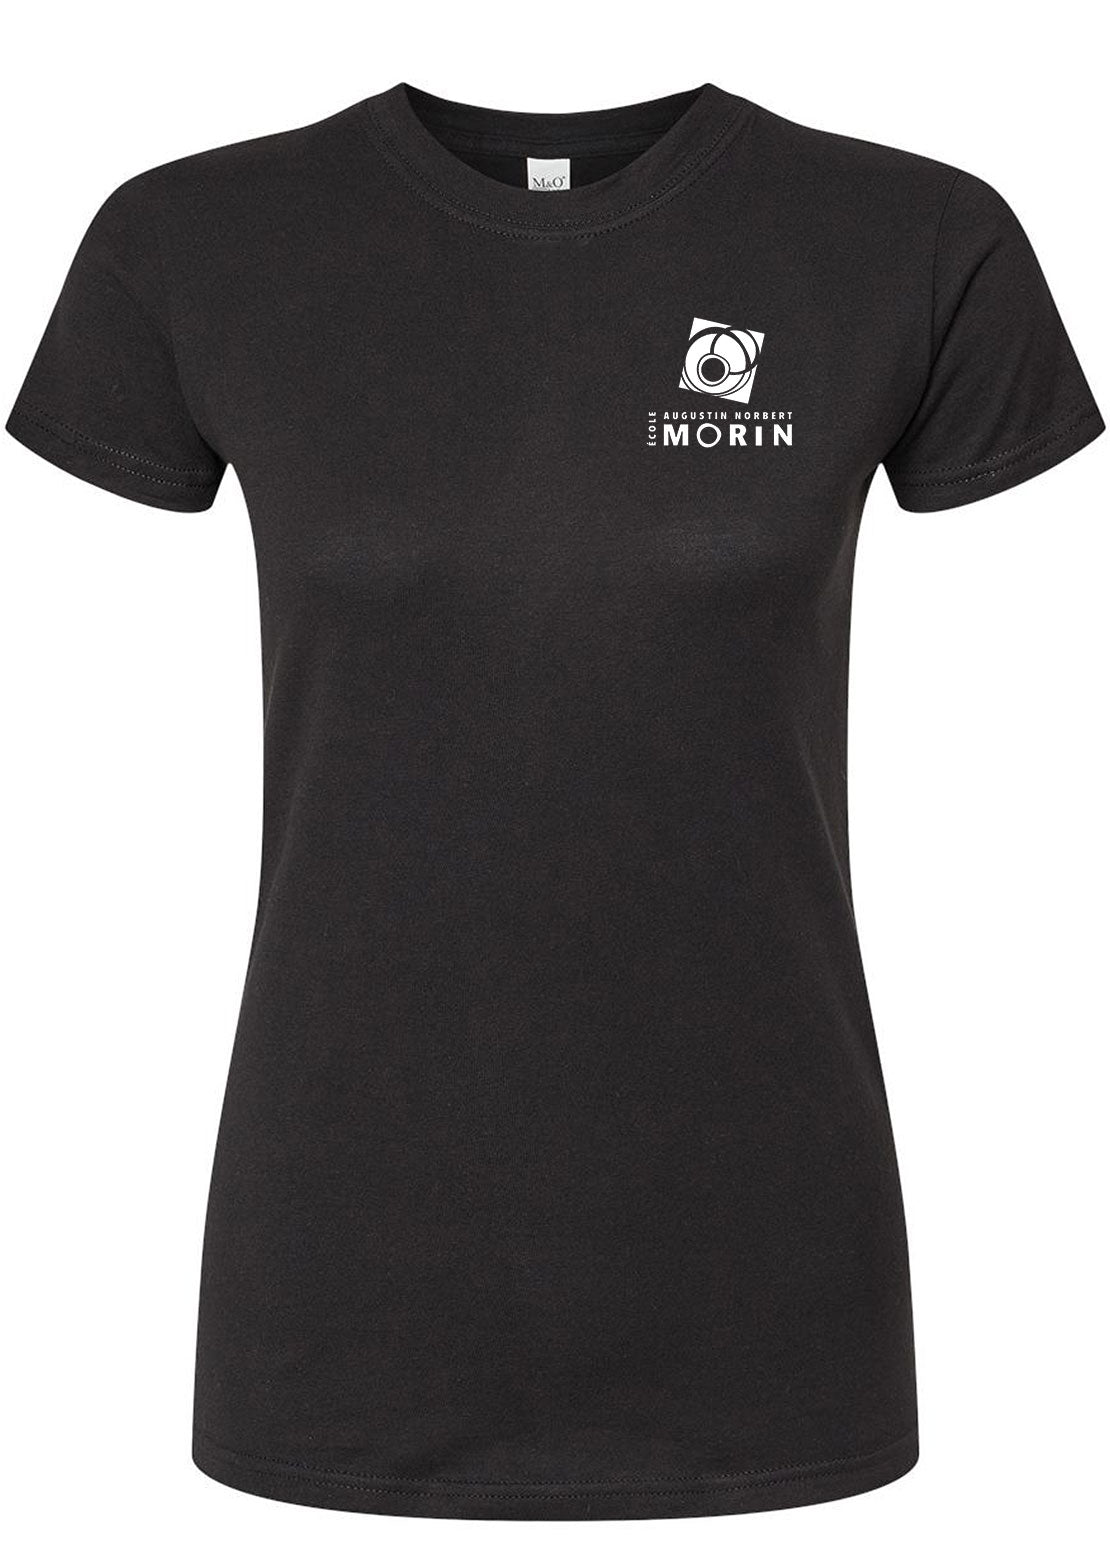 AN-MORIN T-Shirt Femme Black